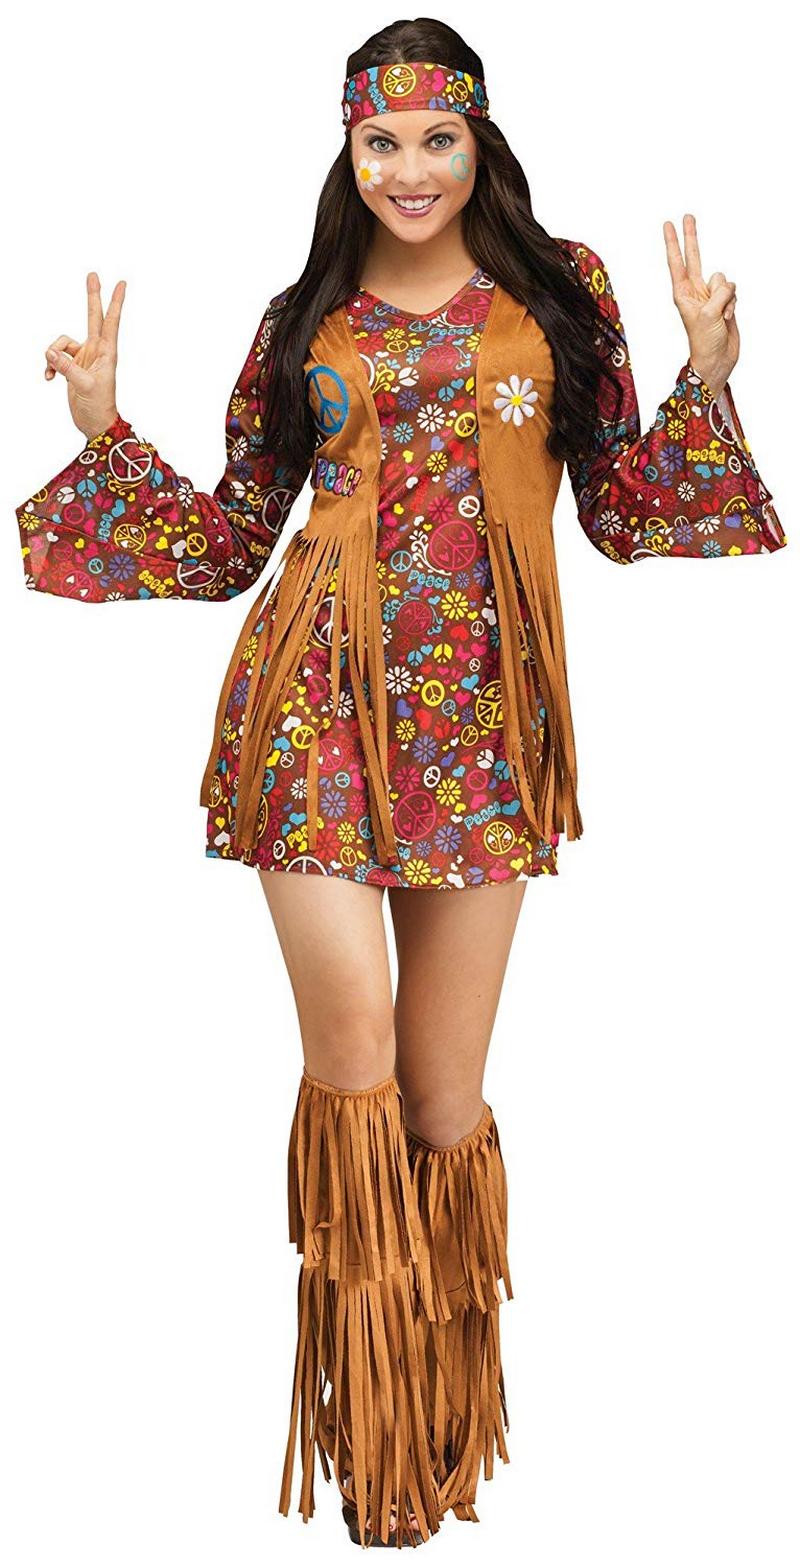  Boho Hippie Stil Kleidung (9)